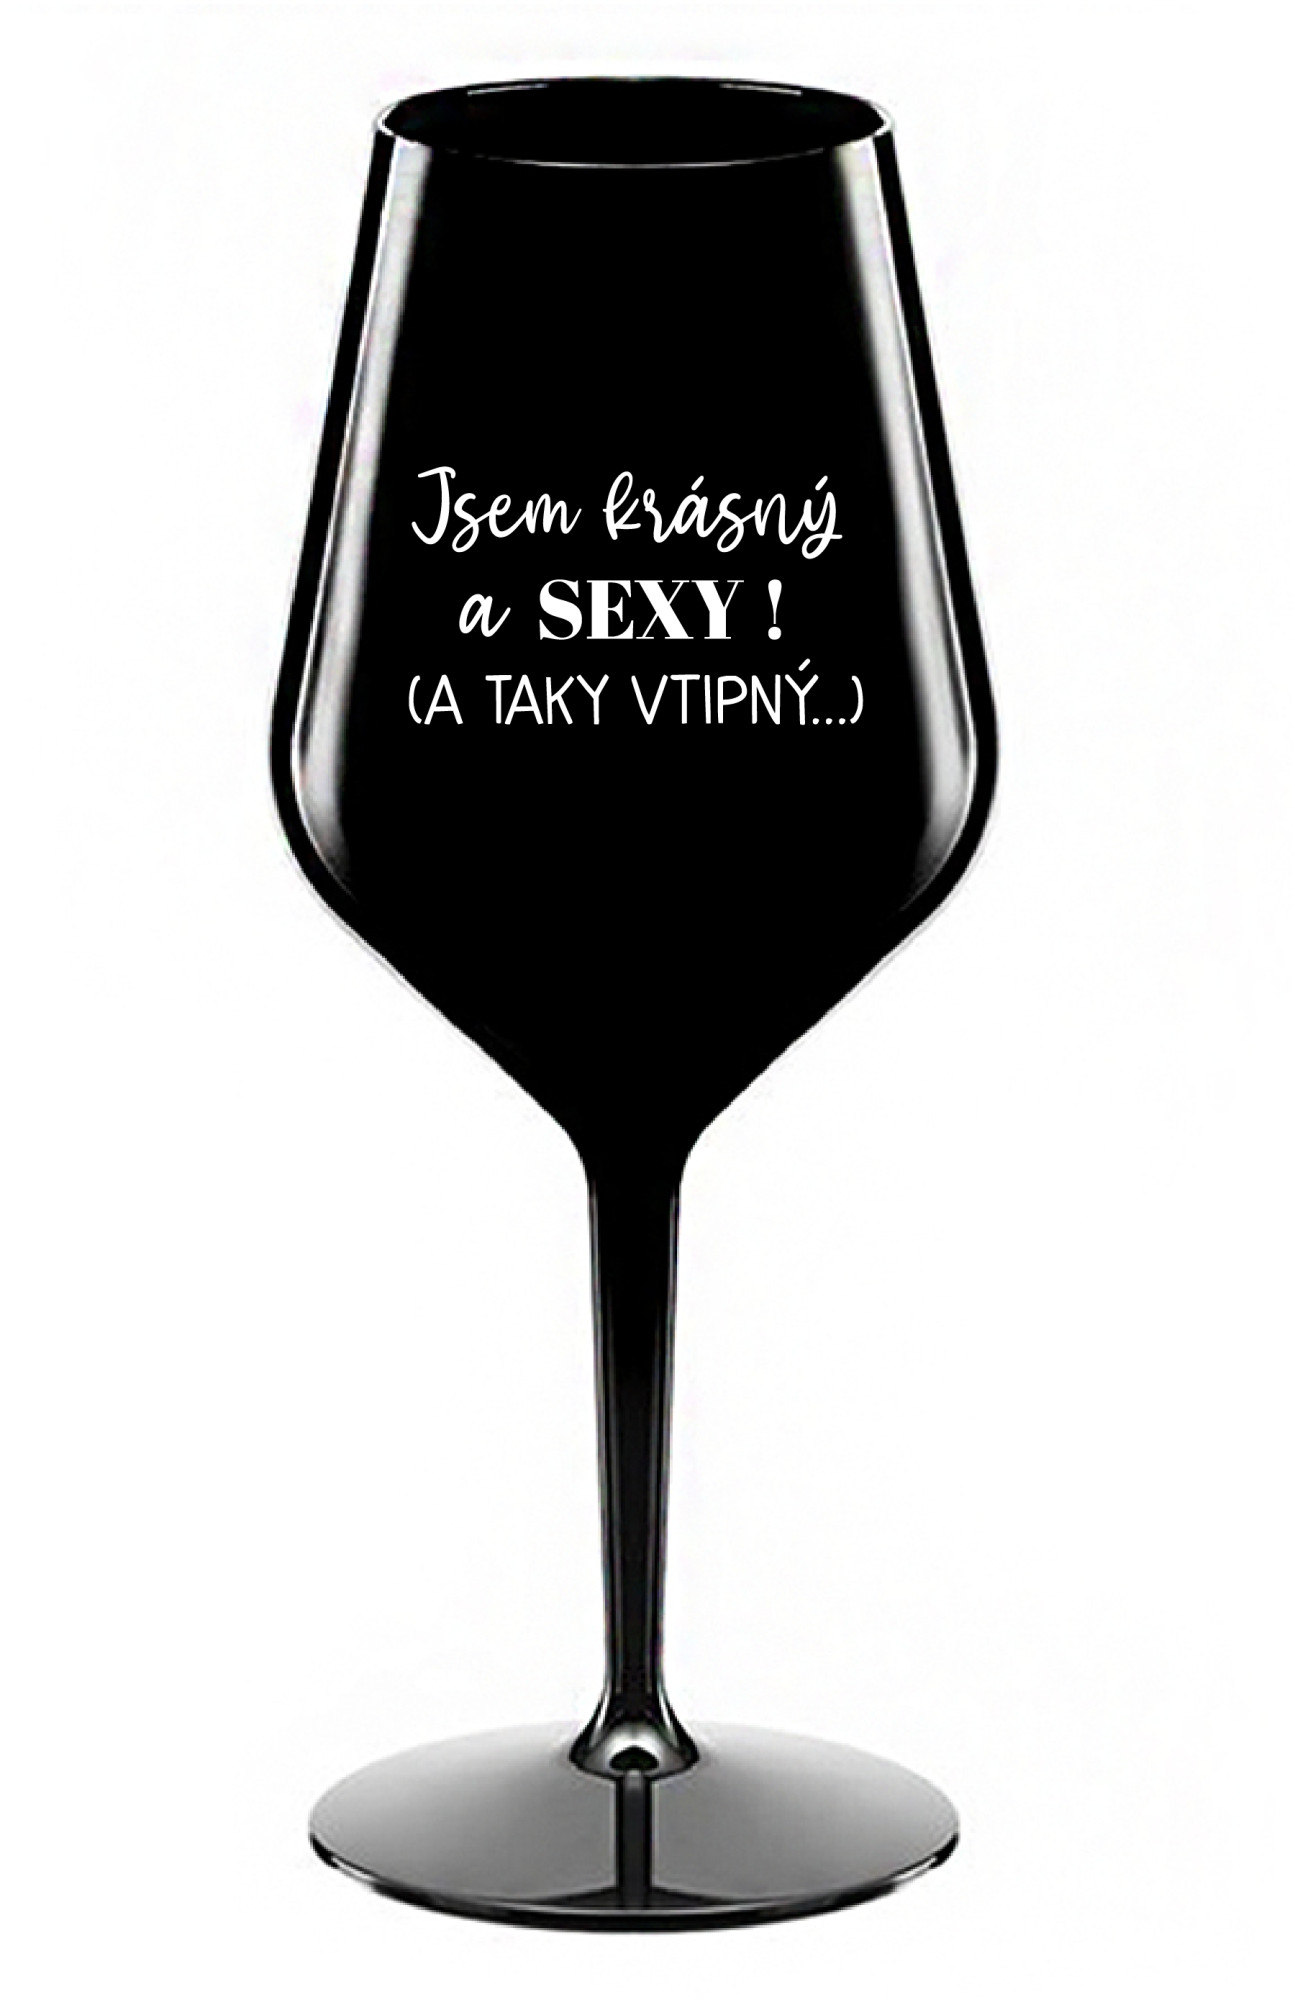 JSEM KRÁSNÝ A SEXY! (A TAKY VTIPNÝ...) - černá nerozbitná sklenice na víno 470 ml